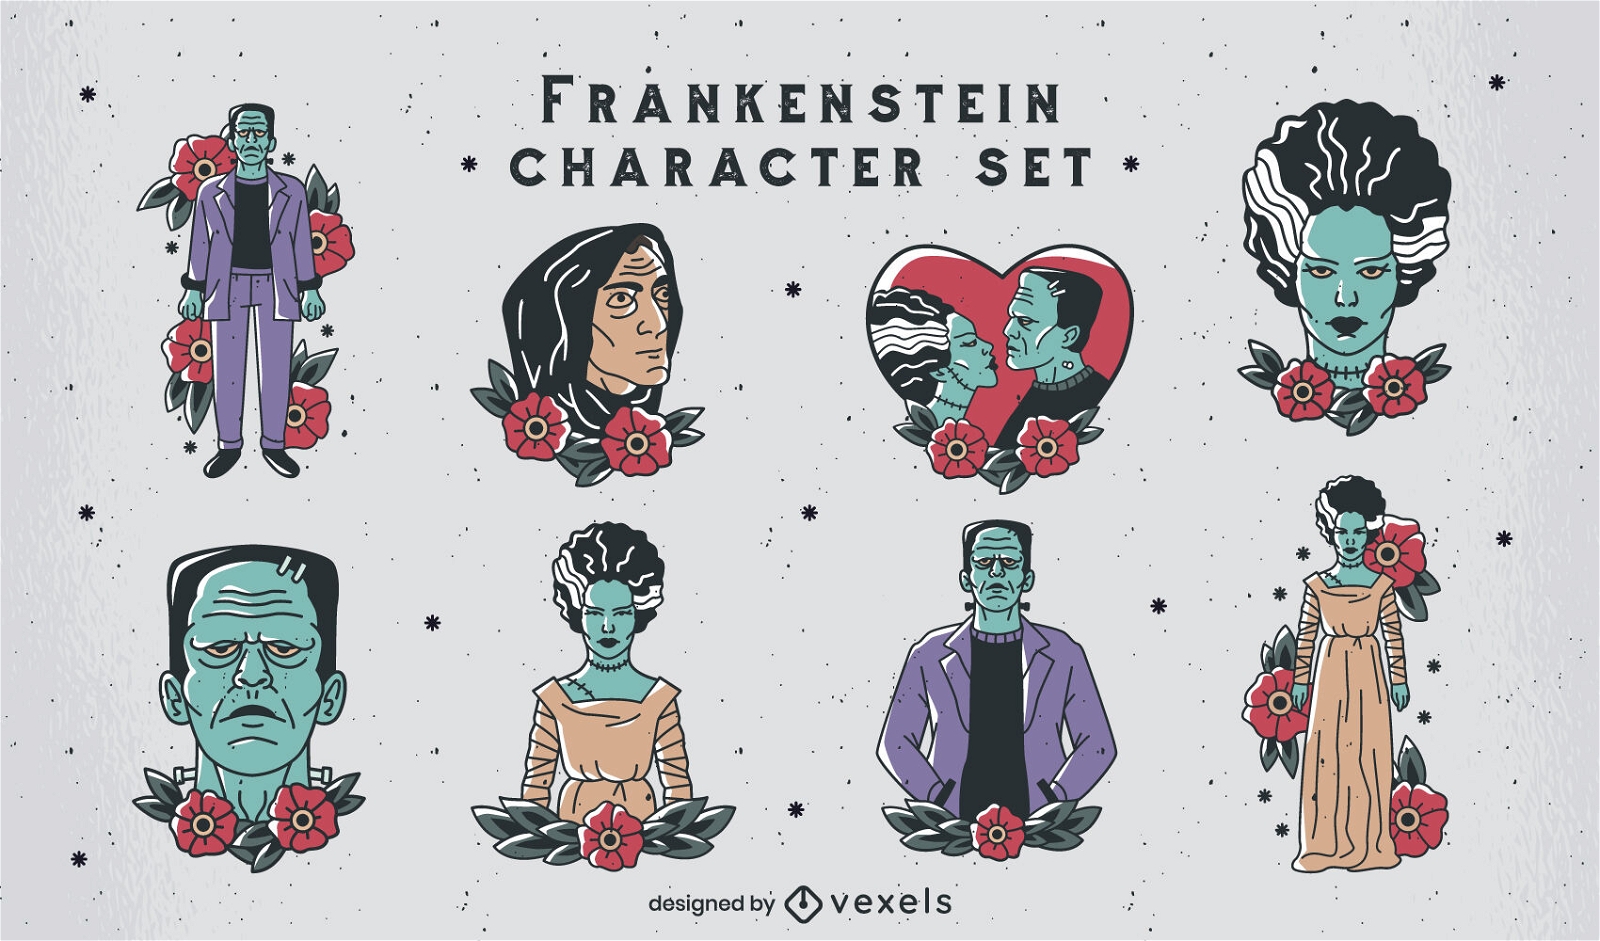 Zeichensatz im Frankenstein-T?towierungsstil